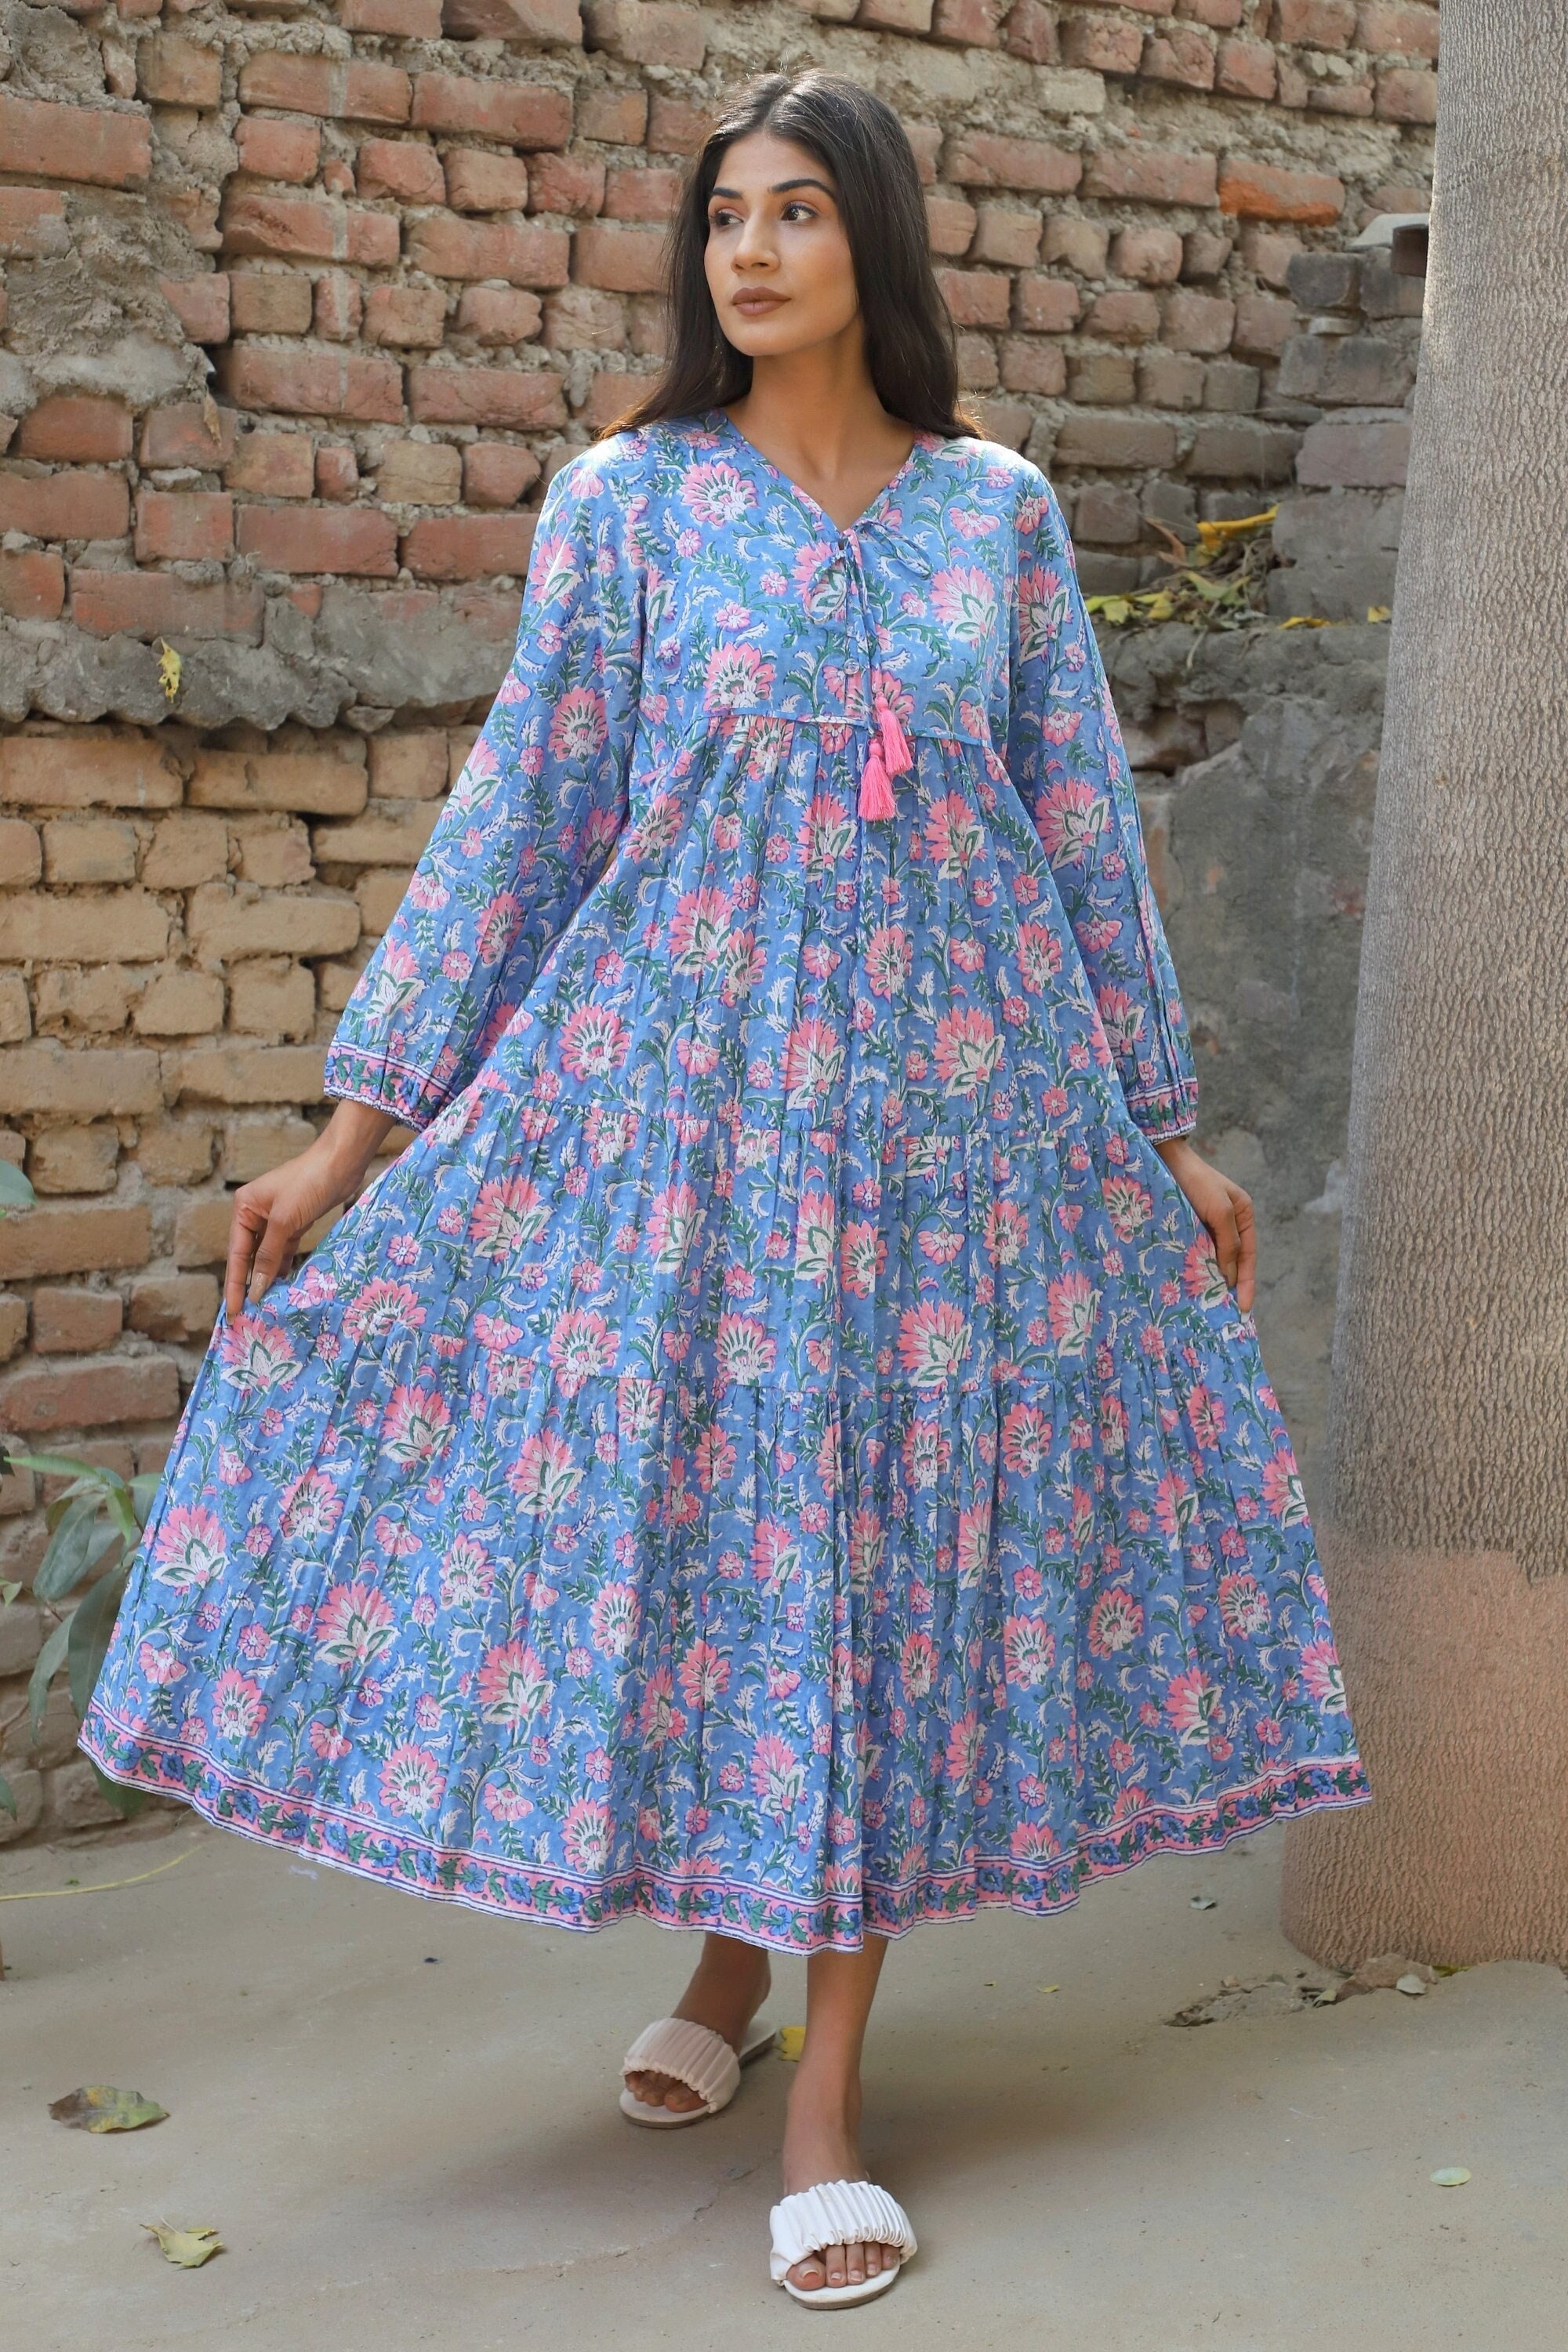 Floral dress, Summer Dress, Pink floral cotton dress, sleeveless maxi –  Nuichan